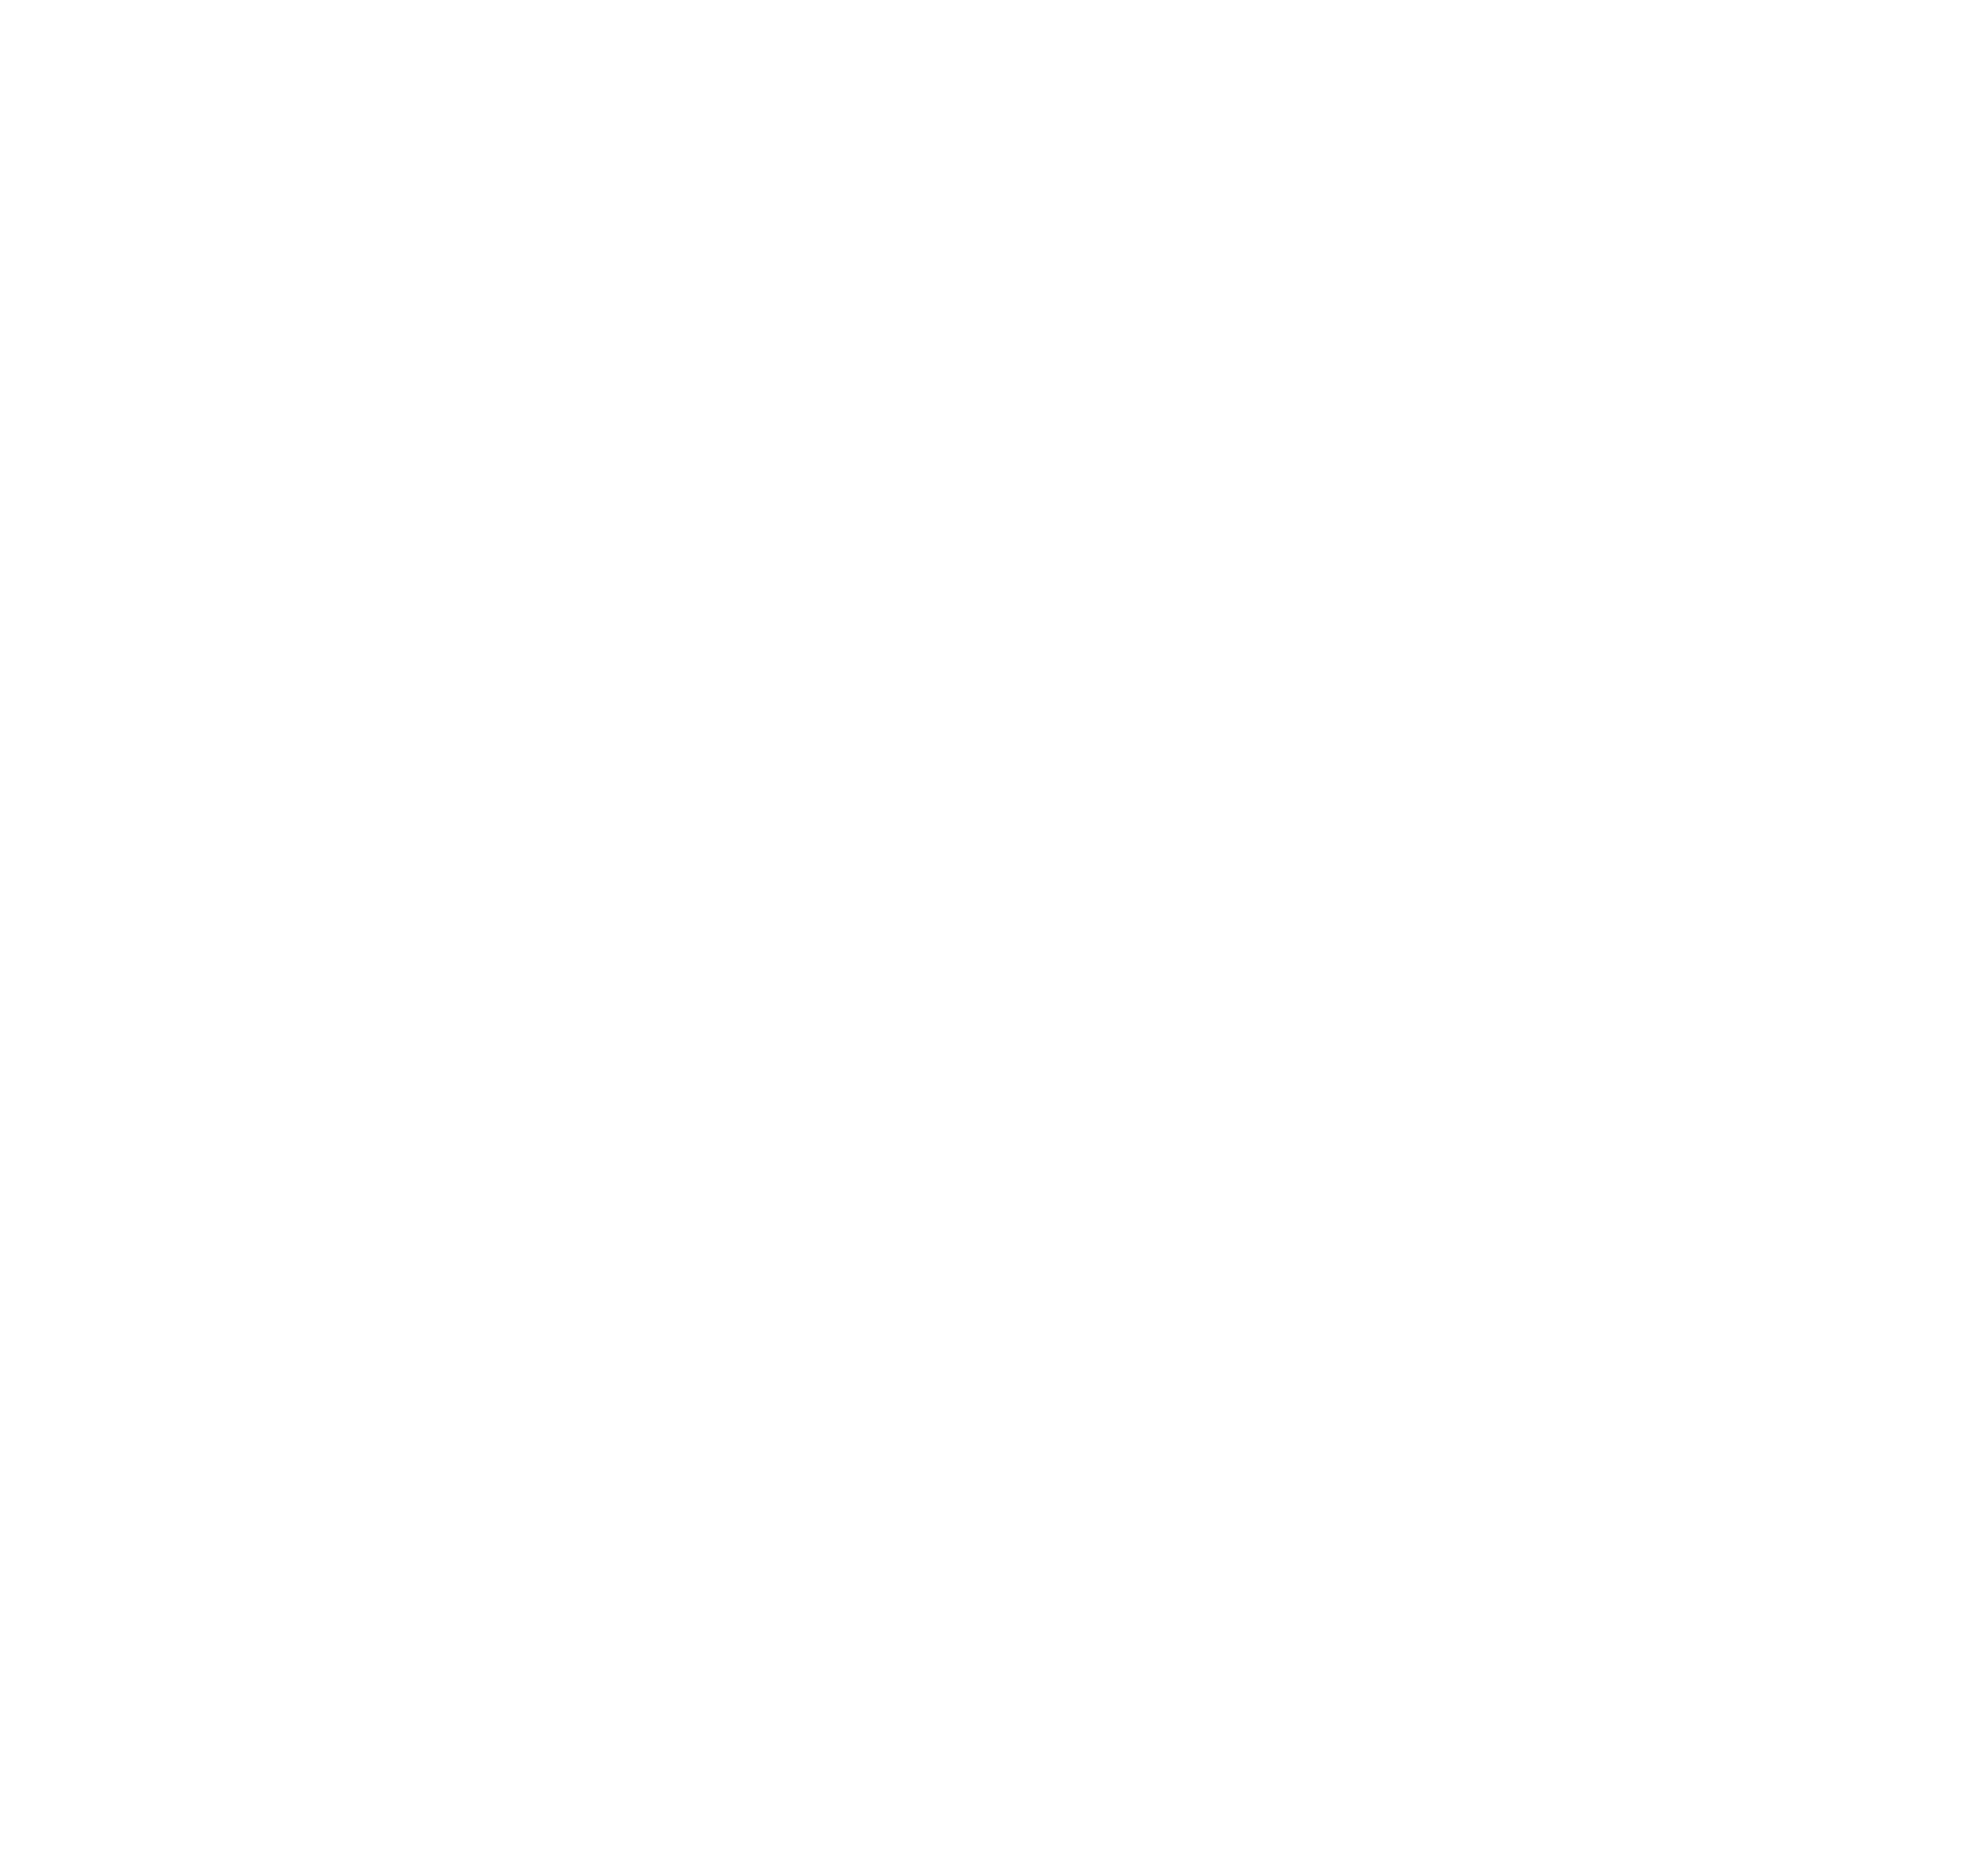 Swansea City's crest